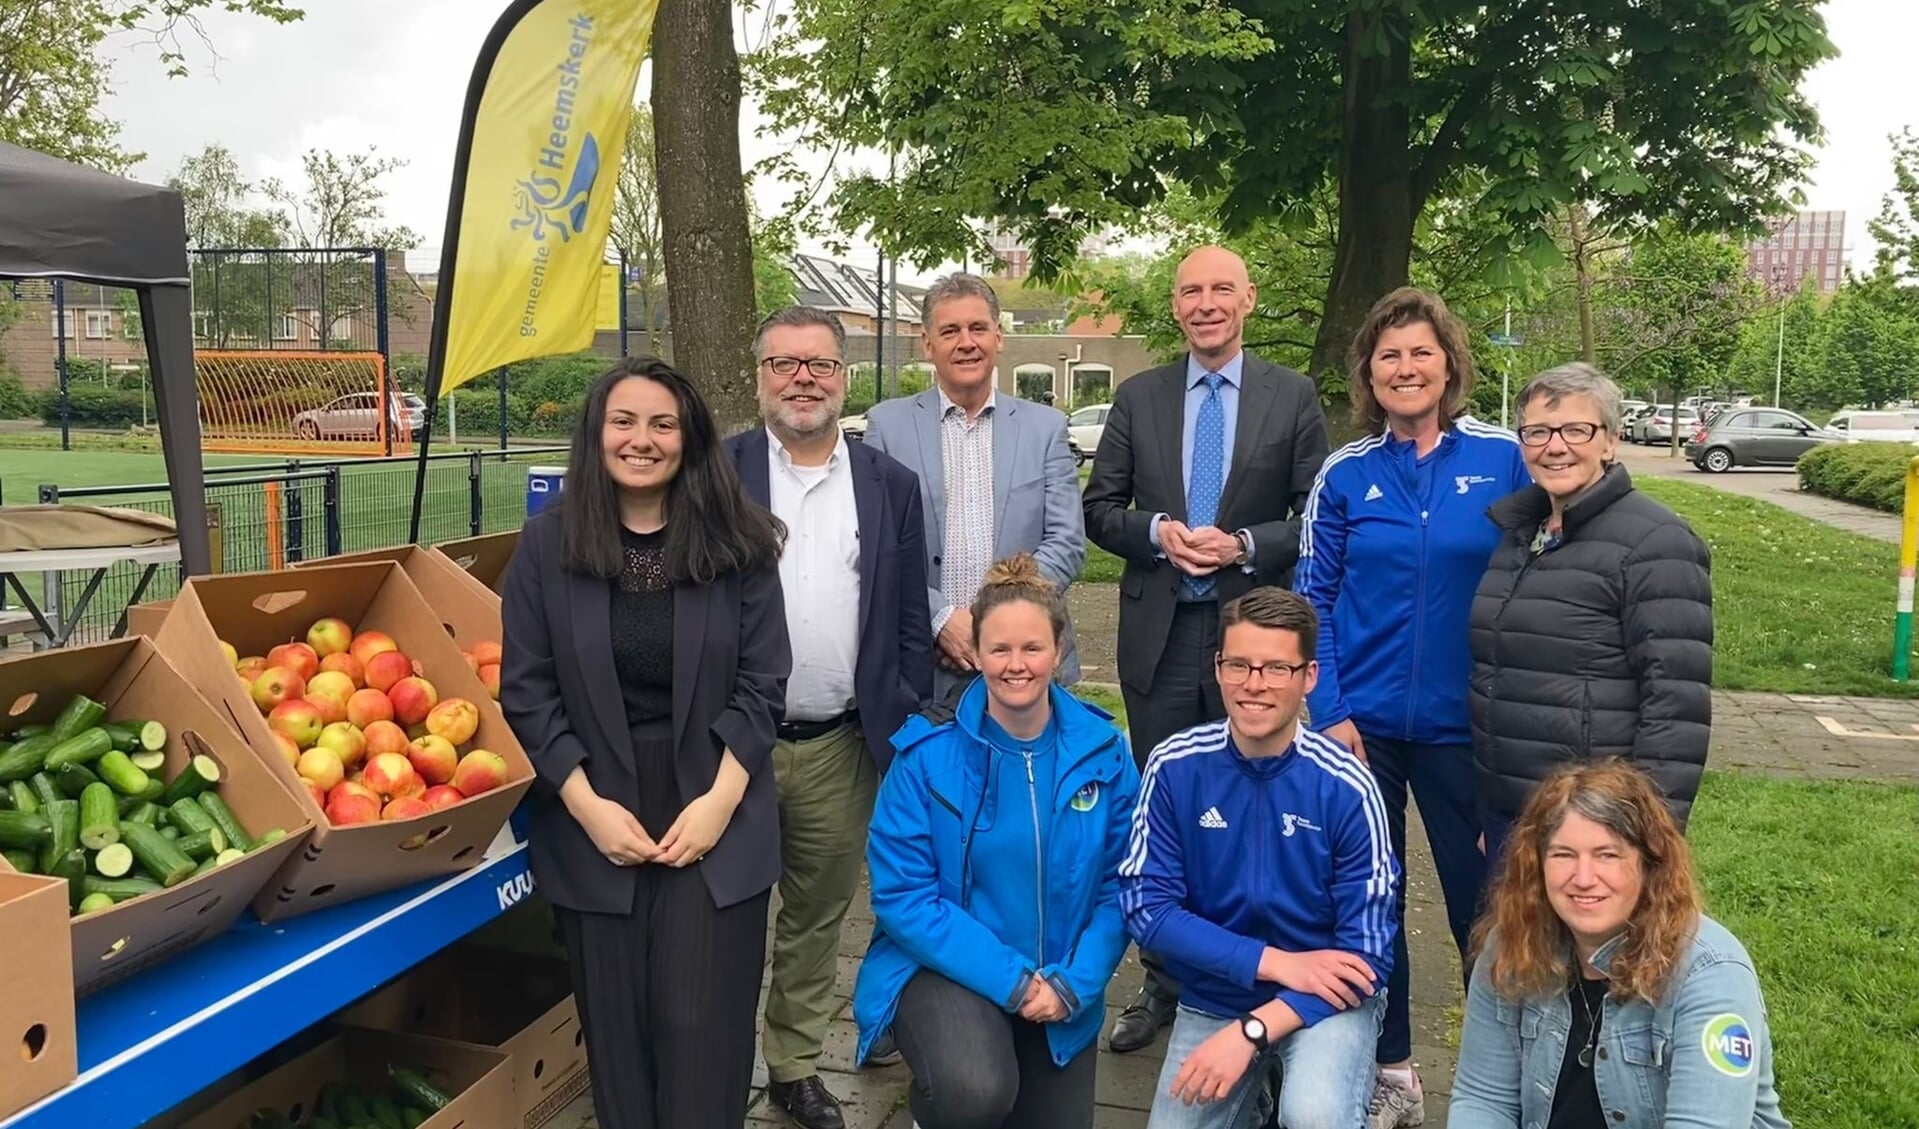 Burgemeester, wethouders, beleidsmedewerkers van de gemeente Heemskerk, Met Heemskerk en Team Sportservice Kennemerland op de foto.